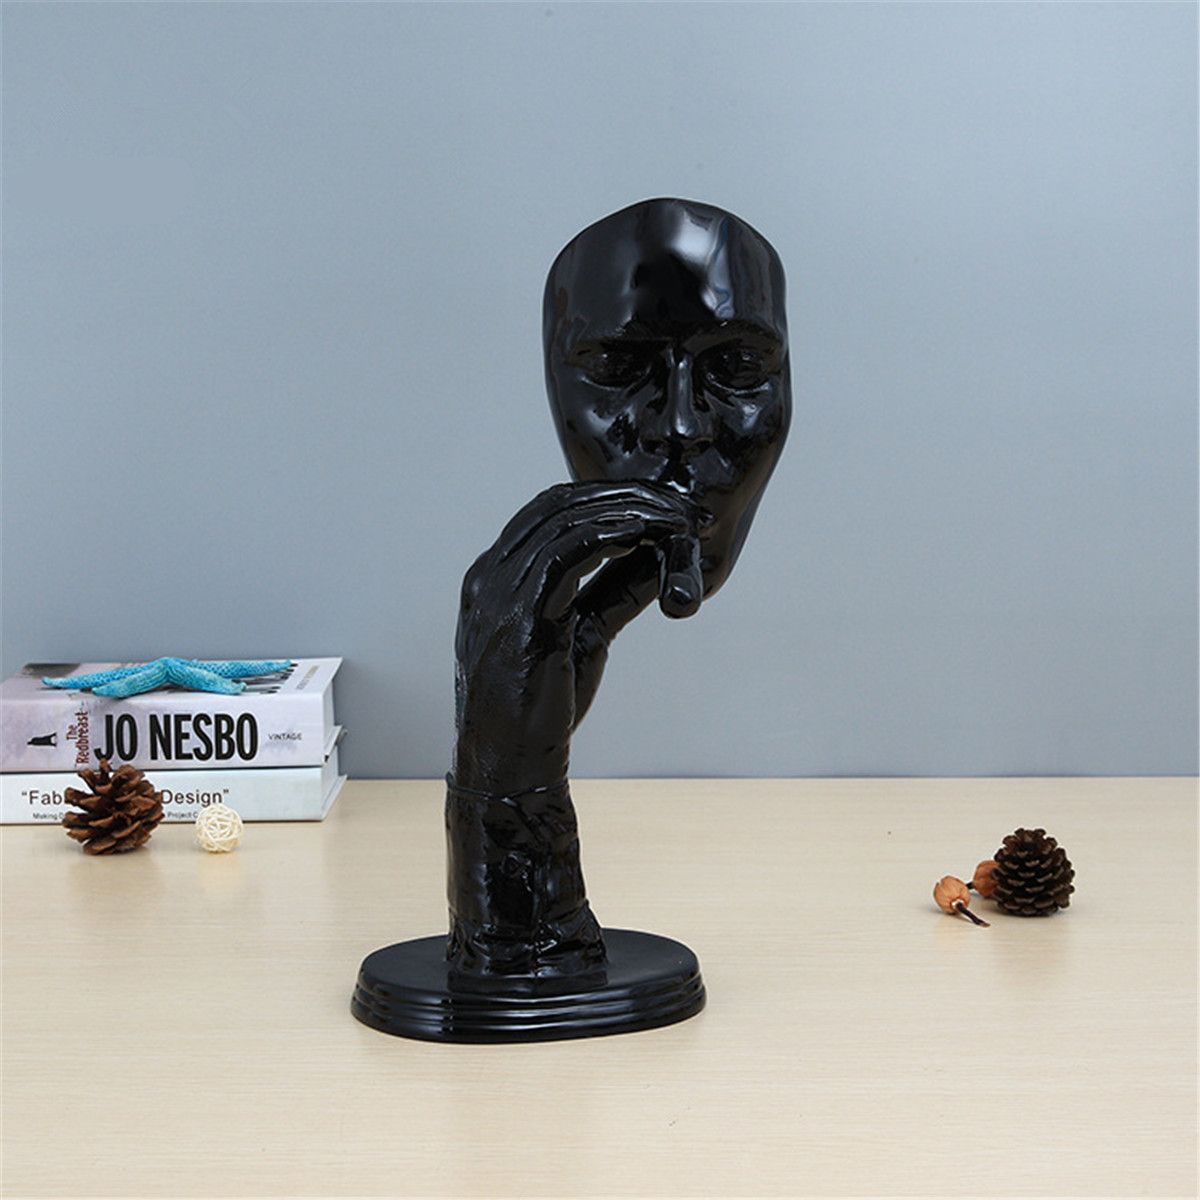 Retro-Meditators-Abstract-Sculpture-Man-Creative-Face-Statue-Home-Desktop-Decorations-1436131